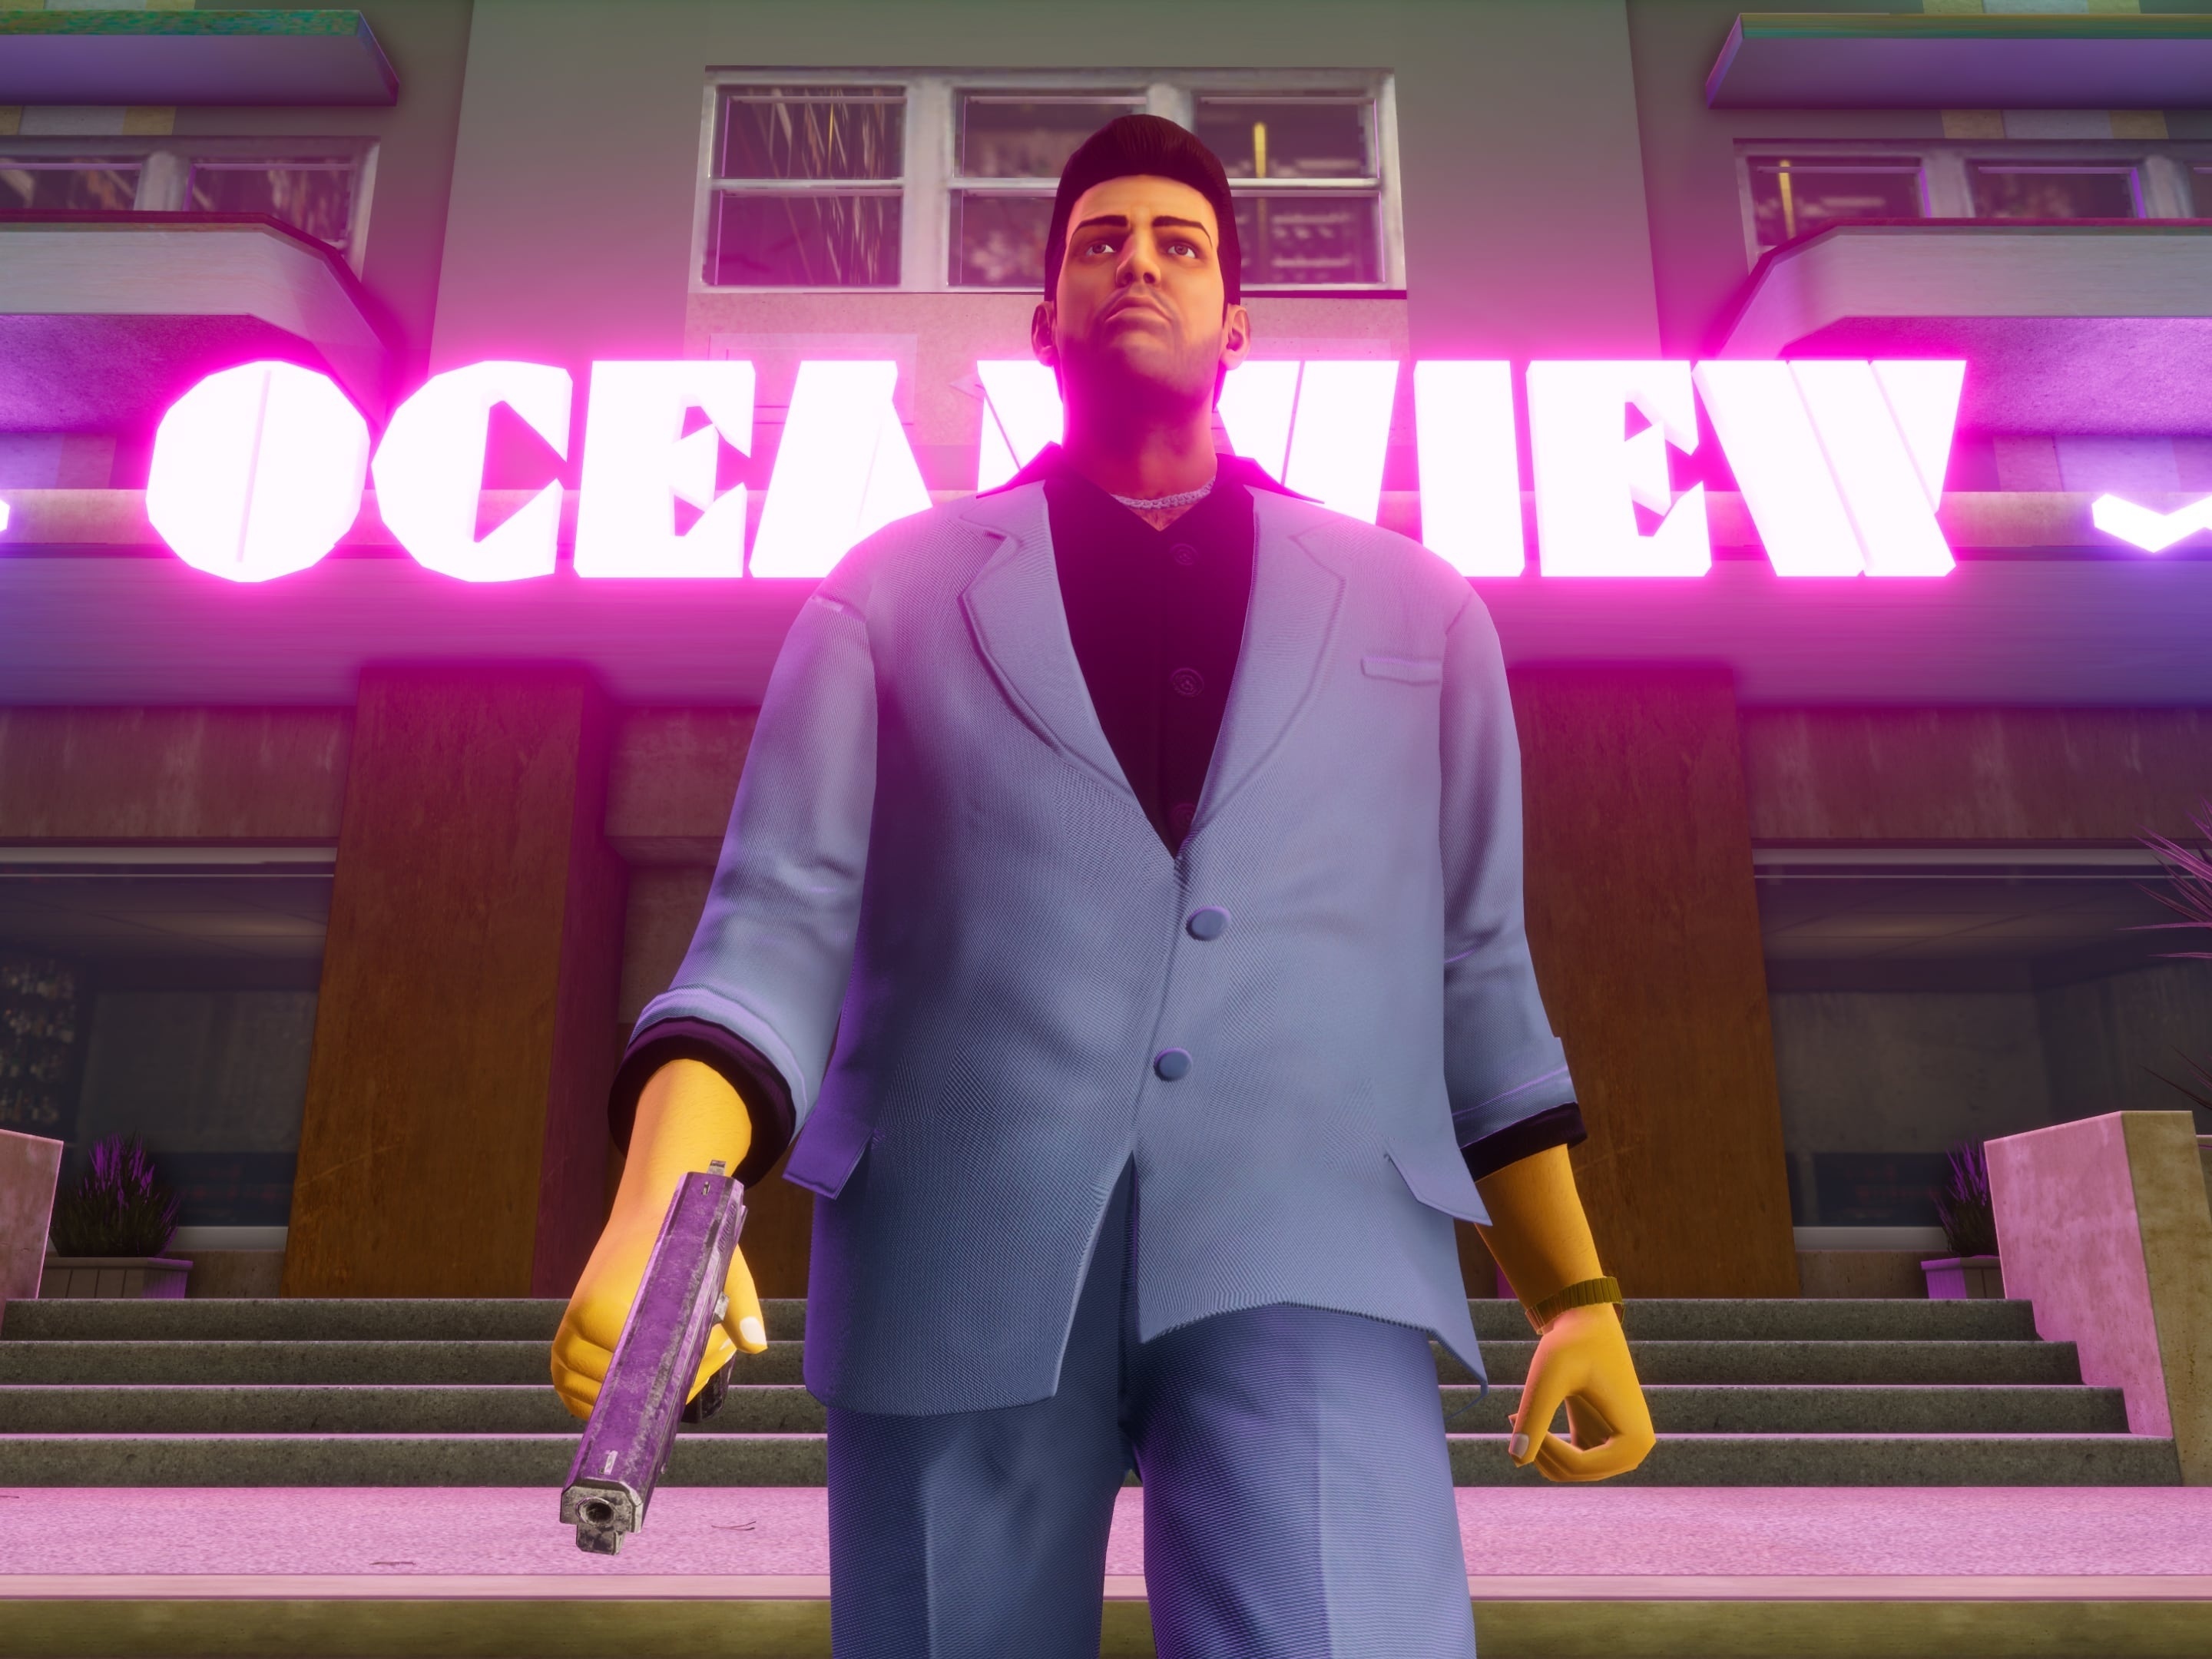 Cheats for GTA - Códigos para todos jogos da série Grand Theft